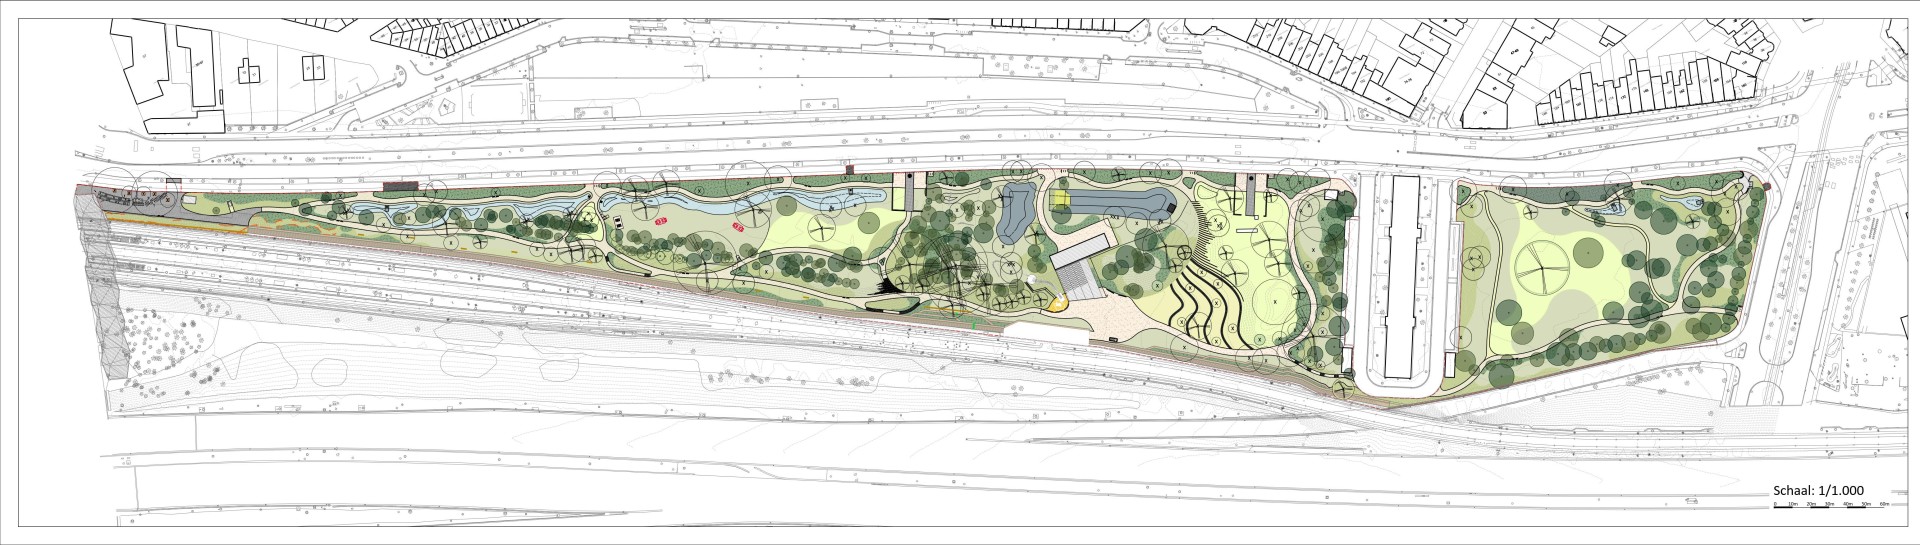 Grondplan definitief ontwerp Pomppark Zuid 